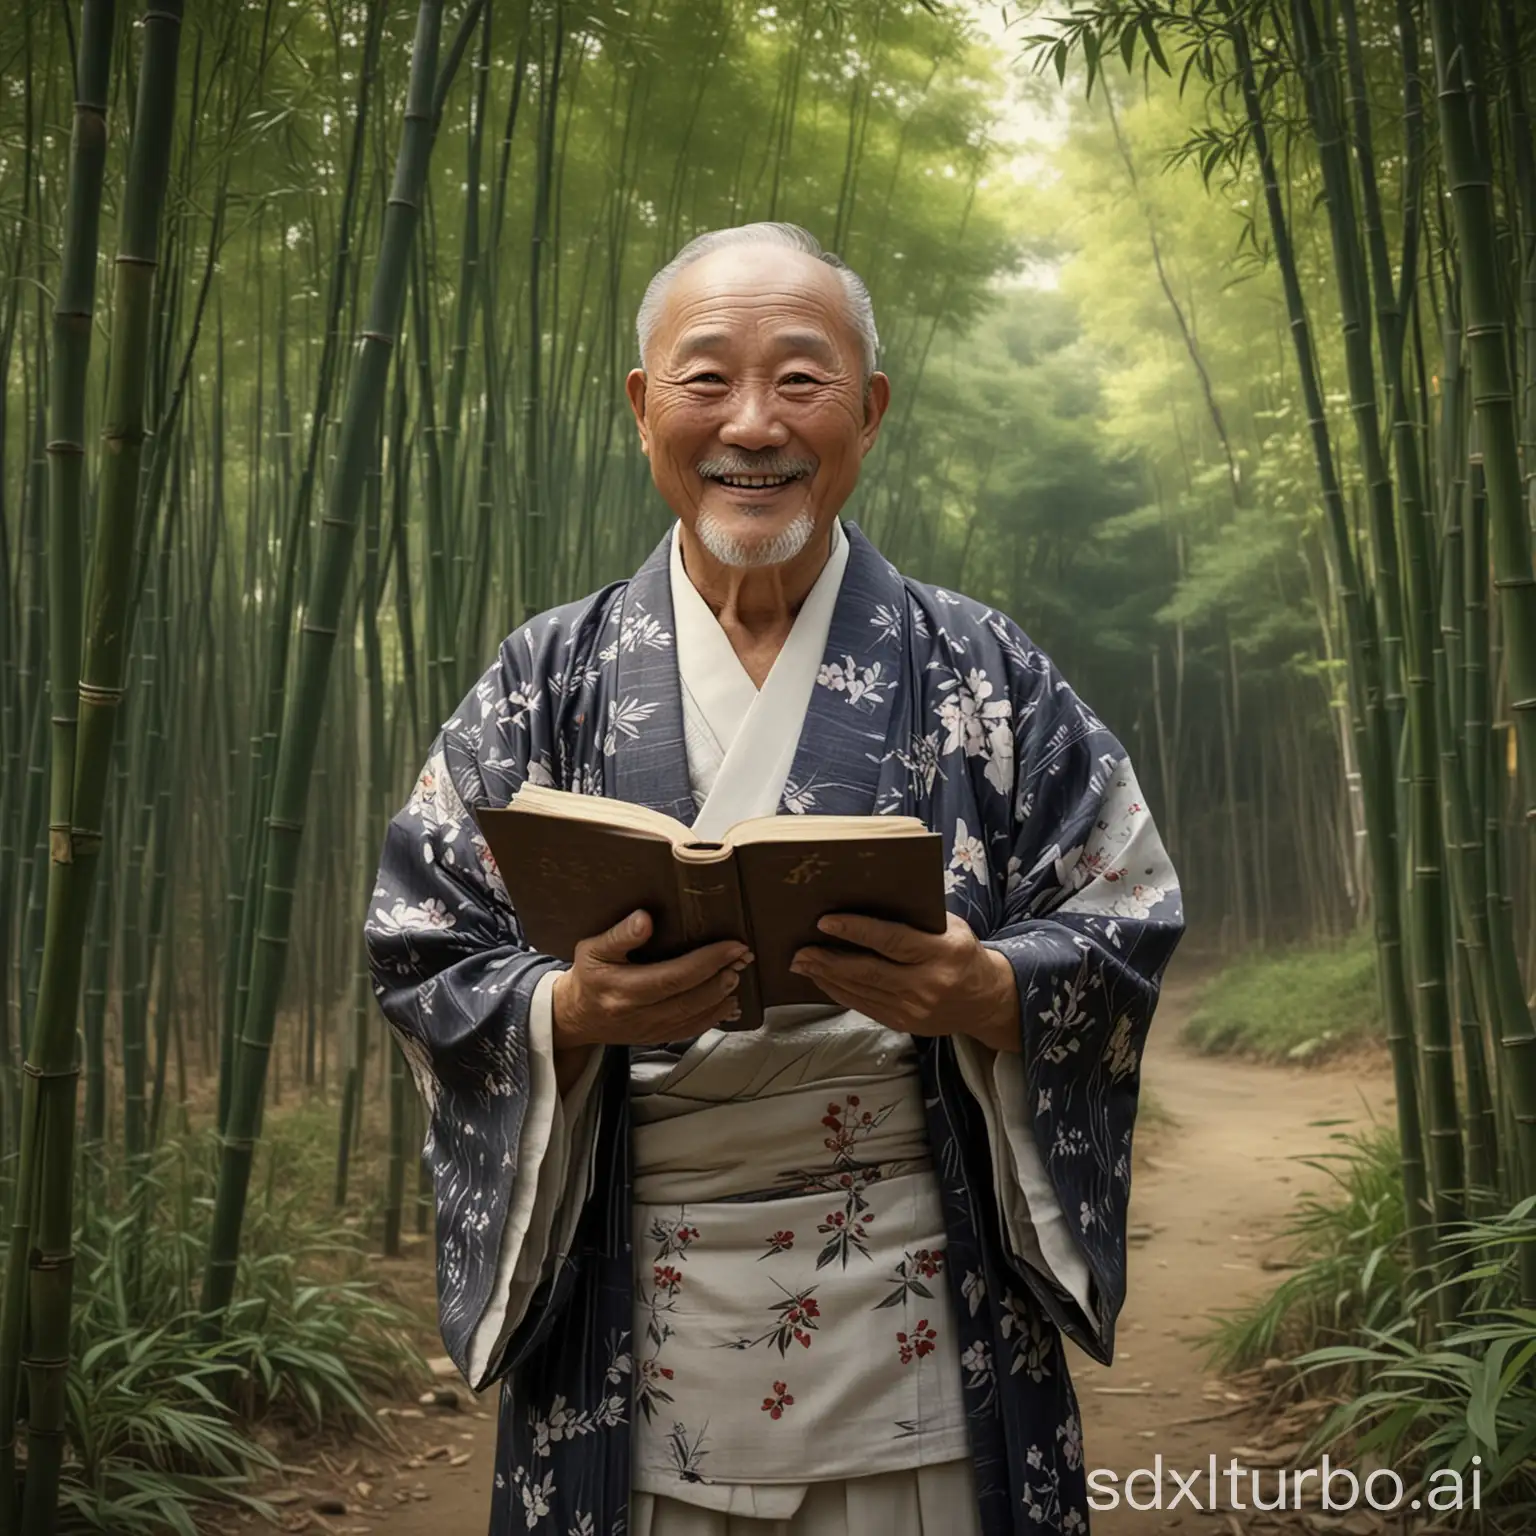 Счастливый старик кореец в кимоно с книгой в руках,  улыбается и стоит среди зарослей бамбука. Реалистичная фотография 4K. Точная детализация